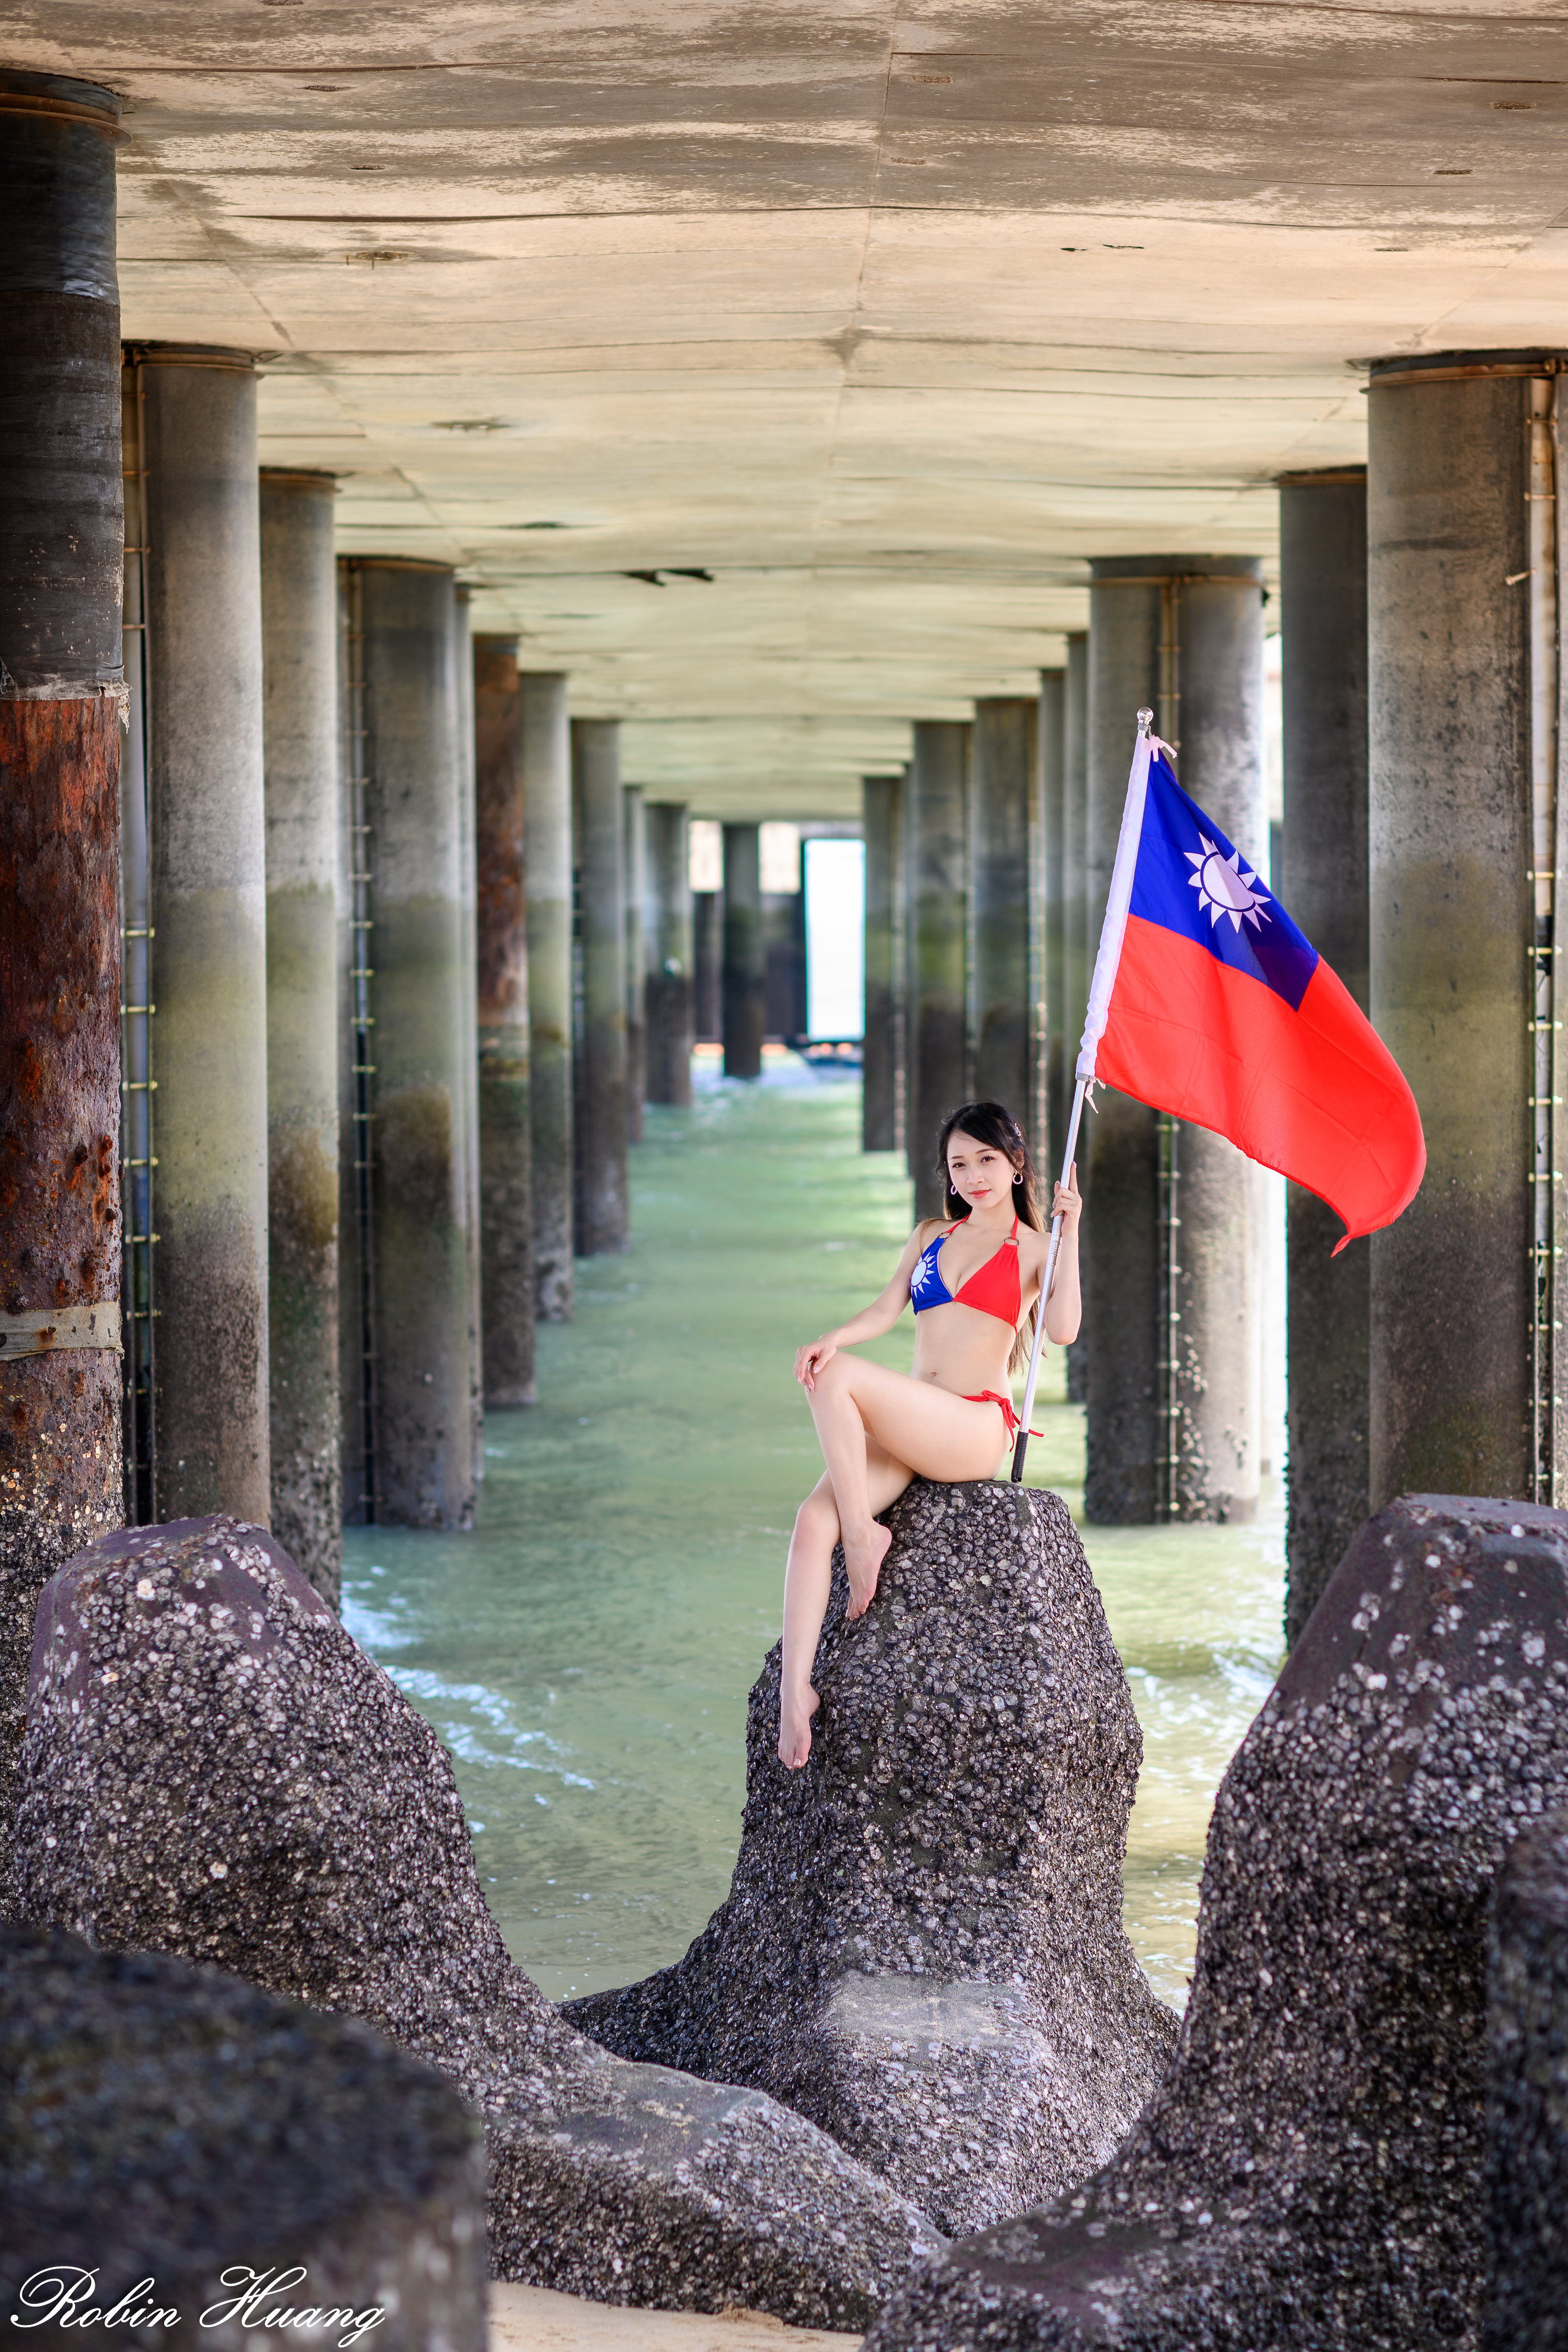 People 2731x4096 Robin Huang women Asian brunette bikini Taiwan pillar